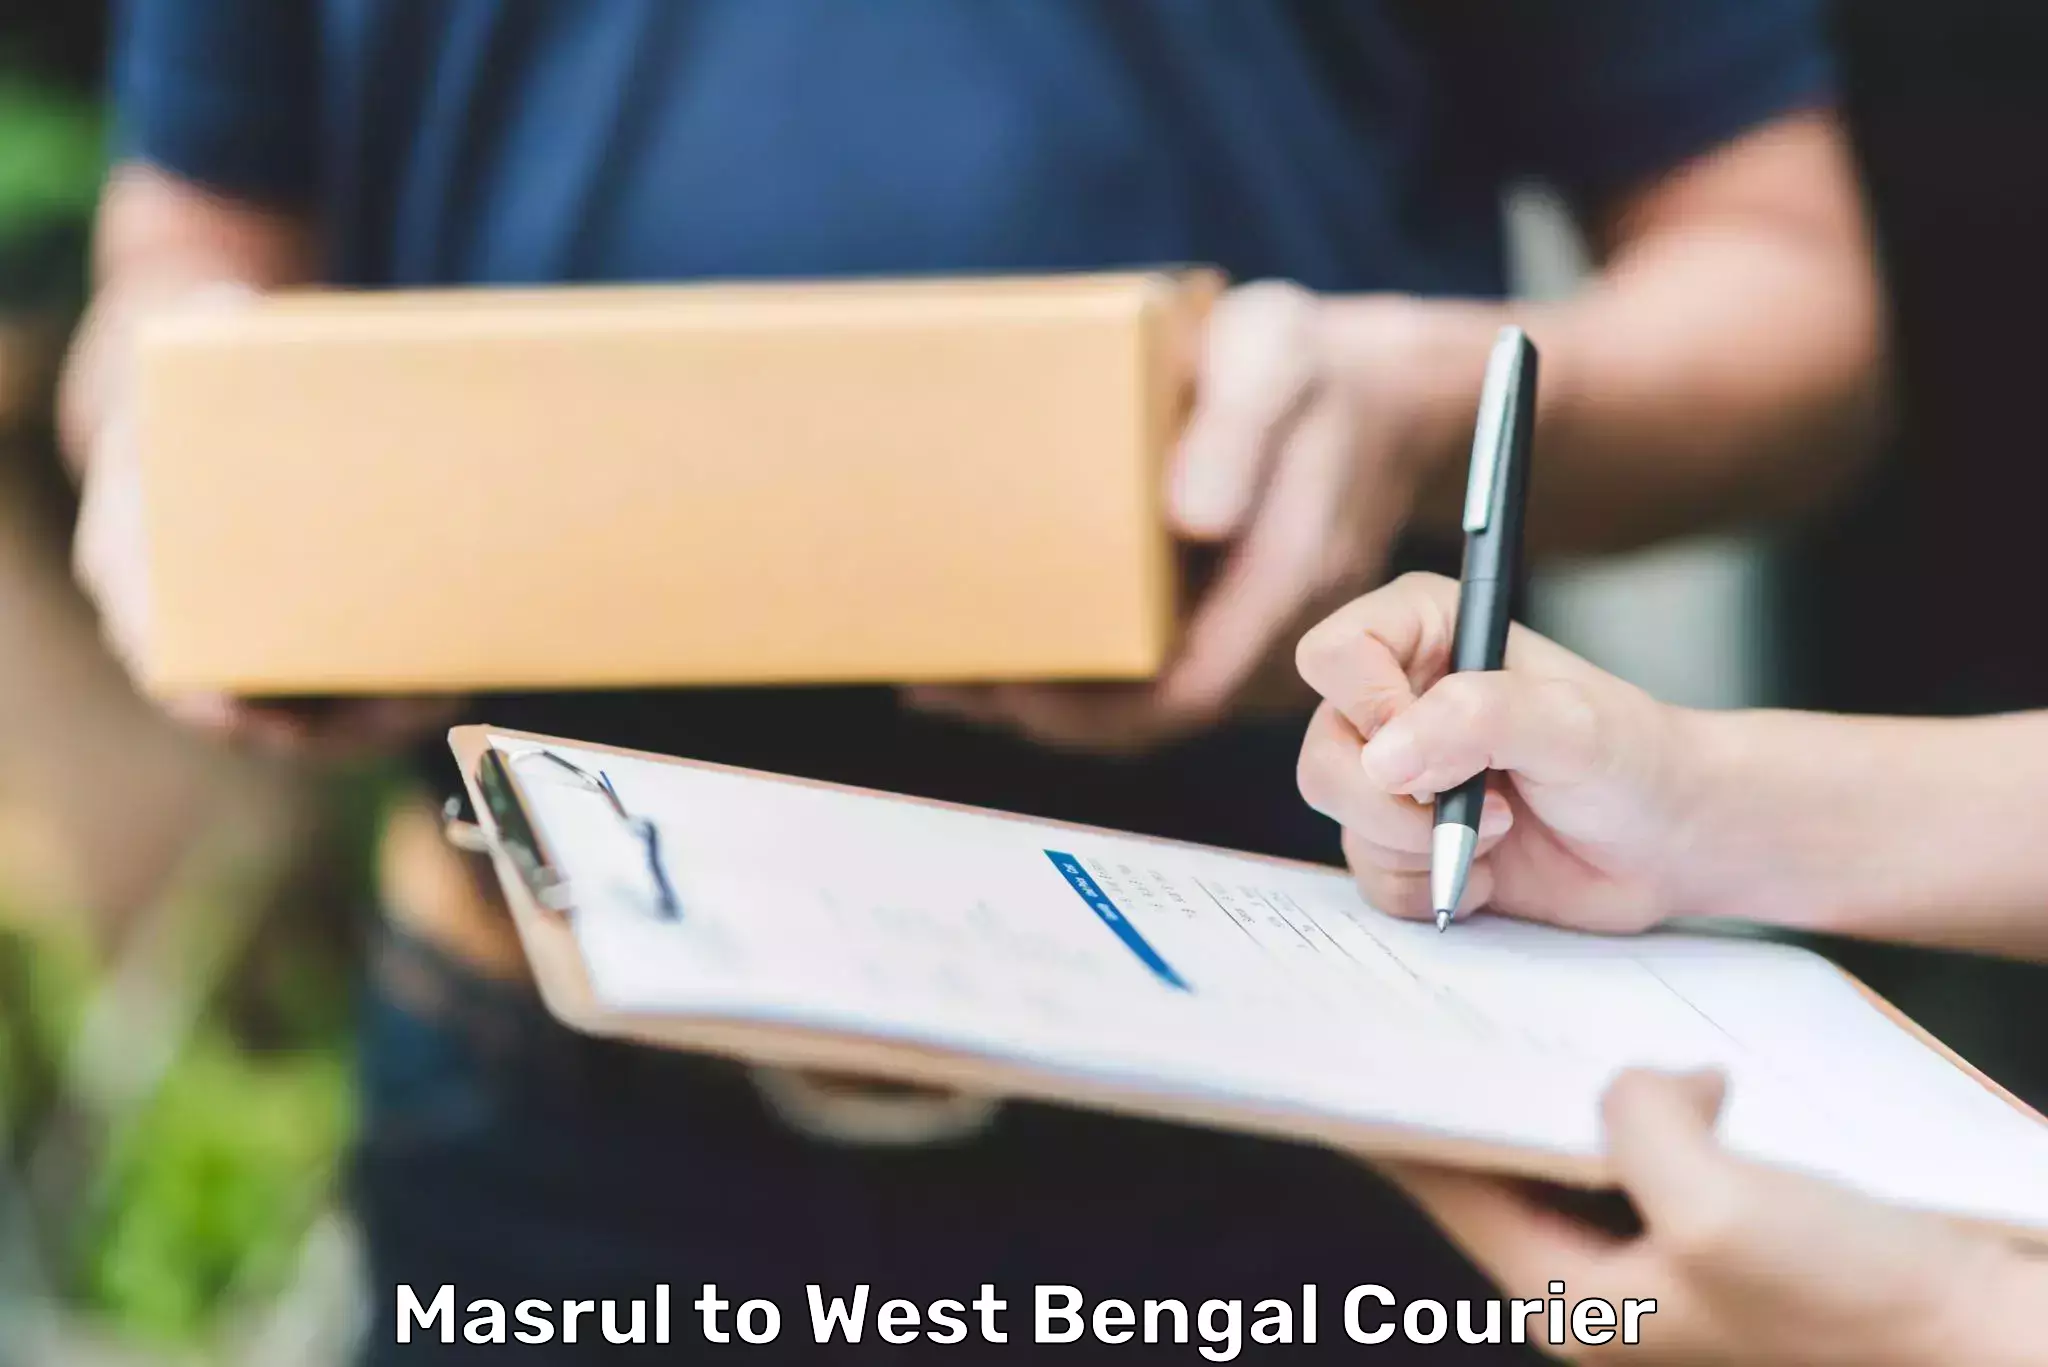 Urgent courier needs Masrul to Manteswar